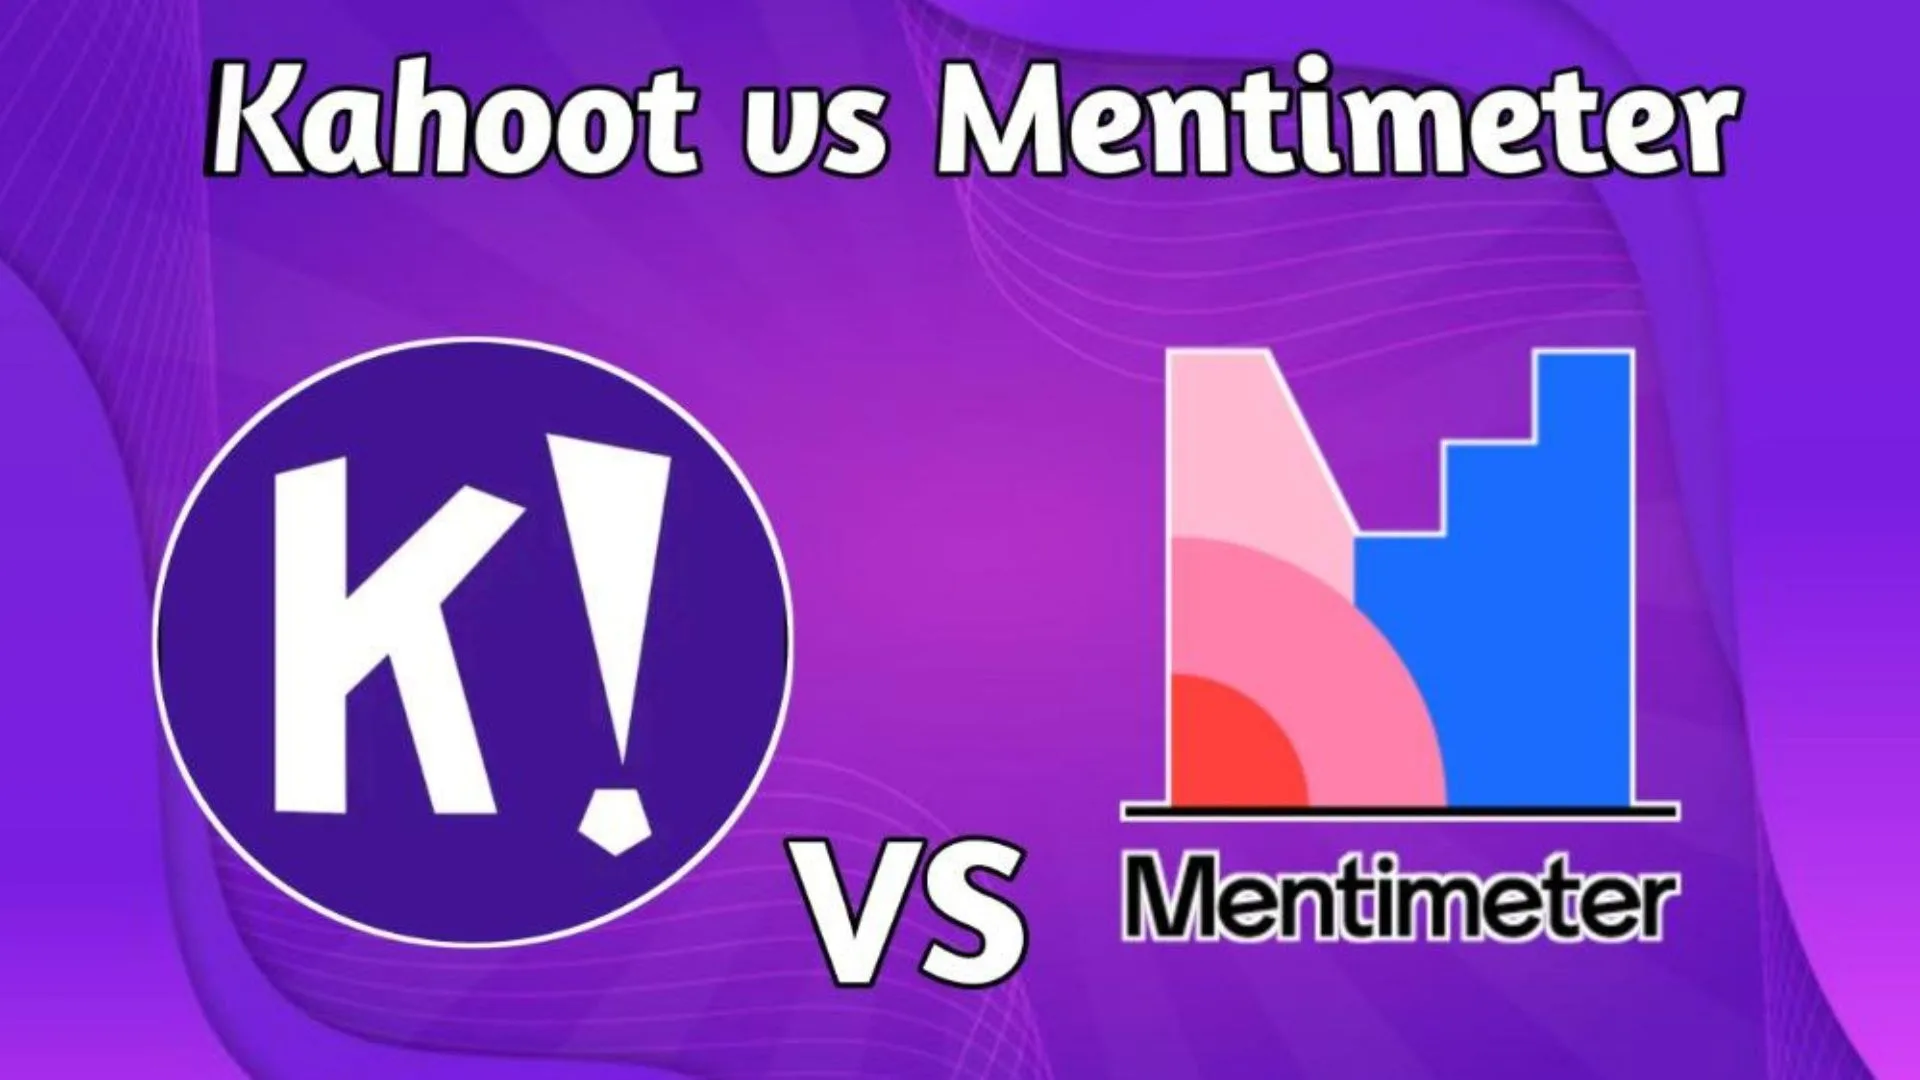 Kahoot vs Mentimeter